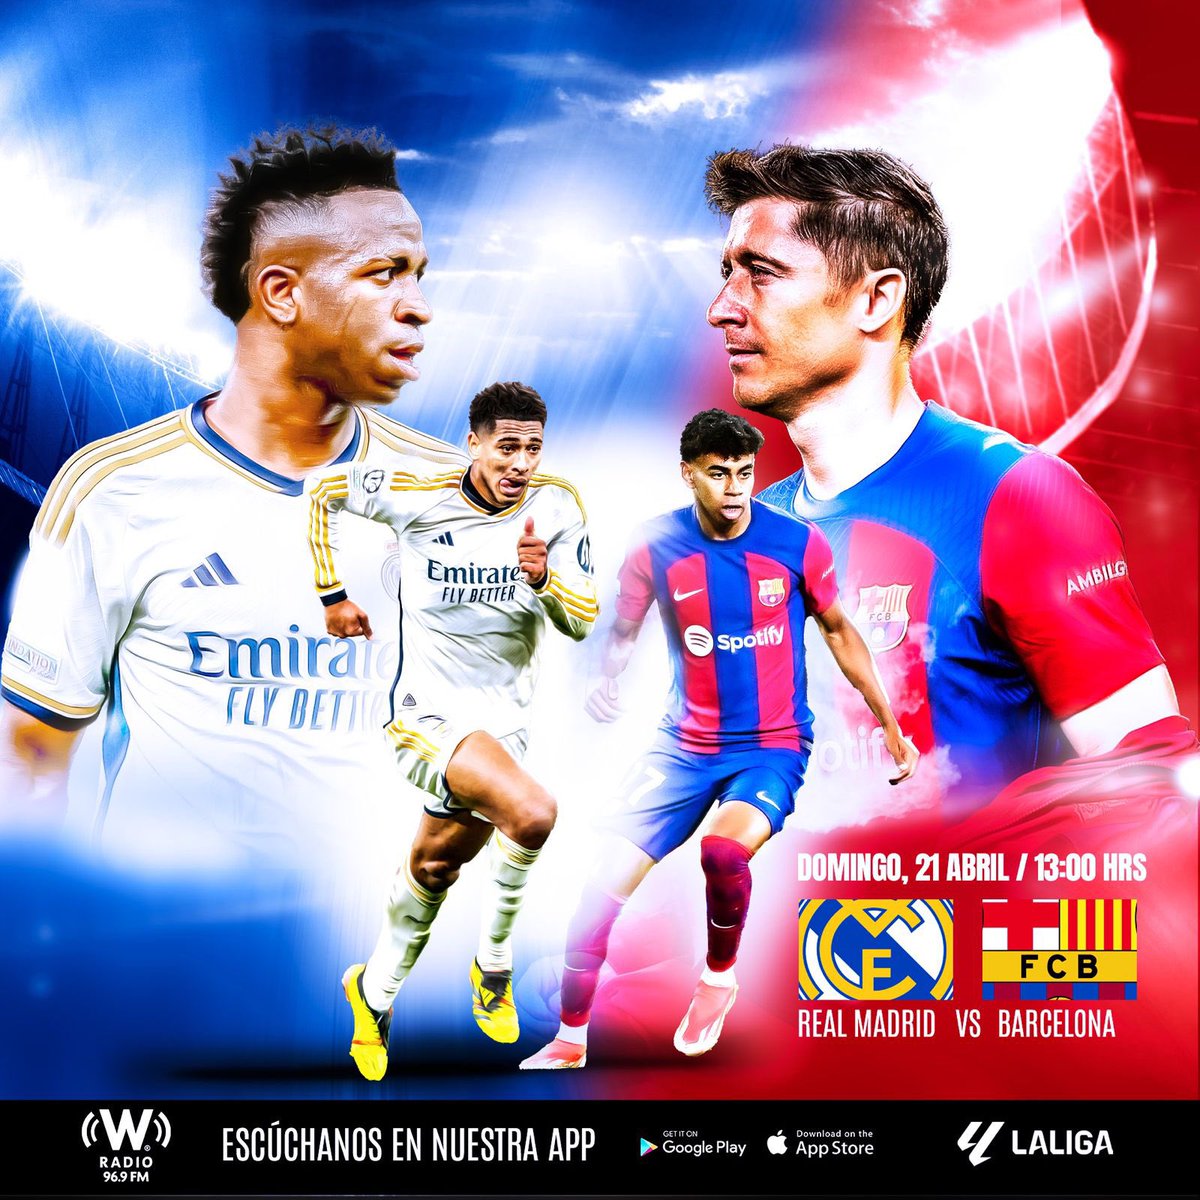 ¡Nos escuchamos este domingo en el Real Madrid vs FC Barcelona por Cadena W | @WRADIOMexico! ¡Desde el Santiago Bernabéu! @wradio_mx 96.9 fm+ la app 📲 ¡Partidazo en España! 🏟️⚽️🇪🇸 #ConectamosTuPasión